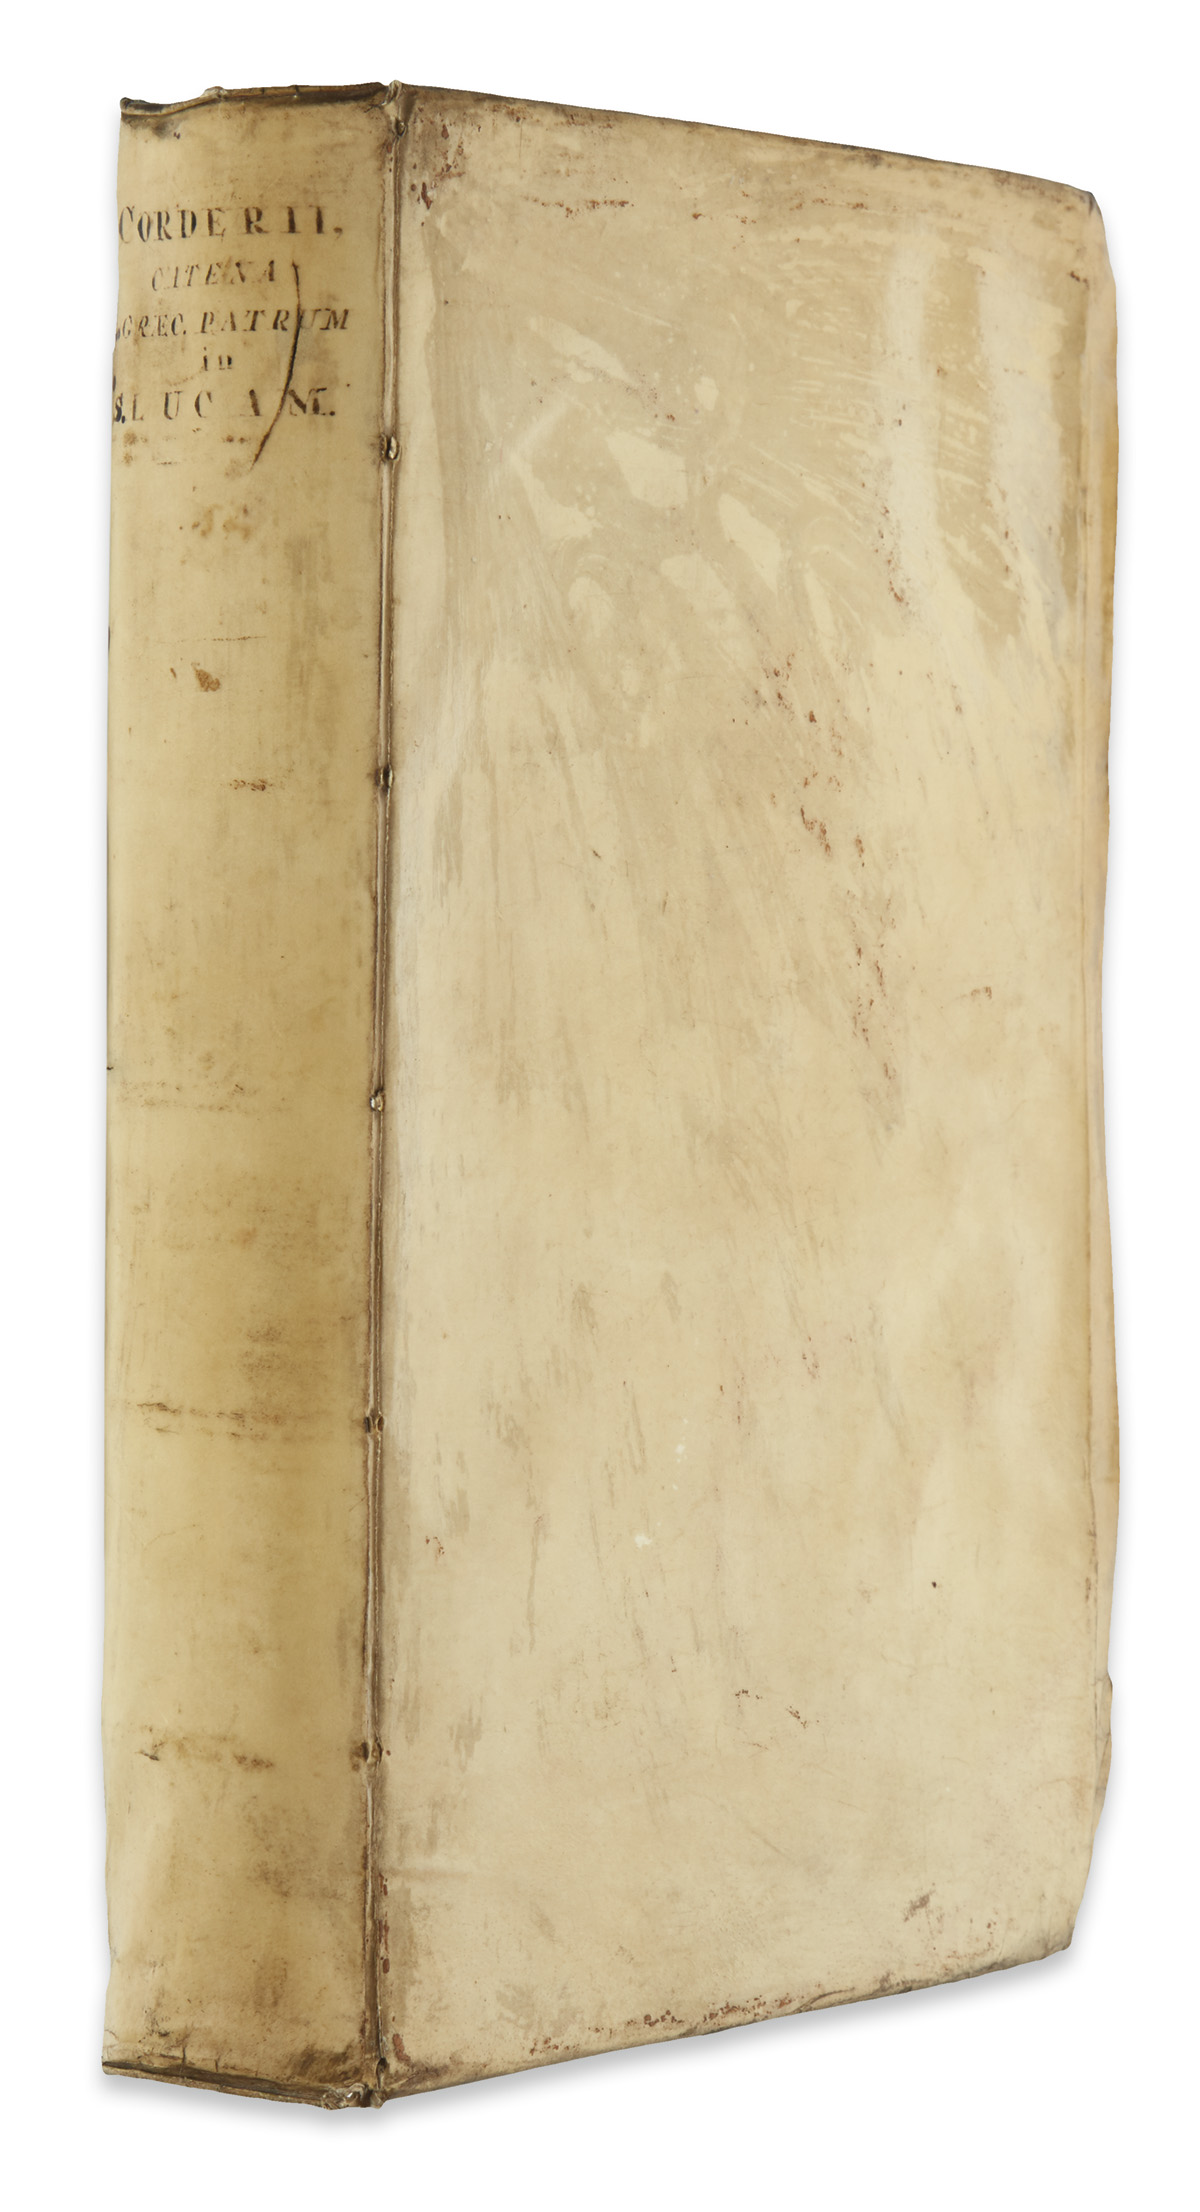 CORDIER, BALTHASAR, S. J., editor. Catena sexaginta quinque Graecorum Patrum in S. Lucam.  1628